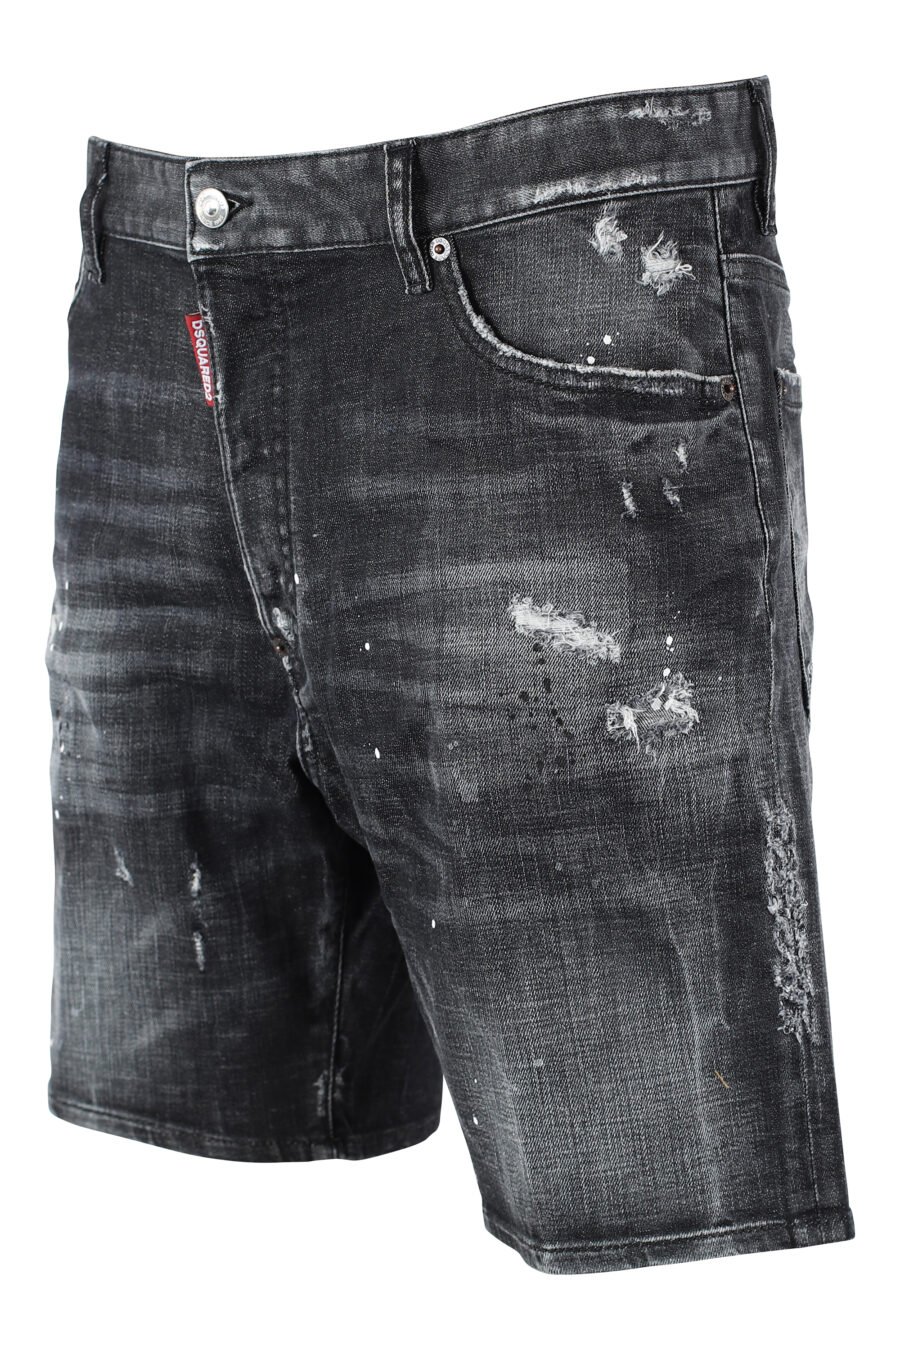 Marine Denim Shorts schwarz getragene Denim Shorts mit Rissen - IMG 9729